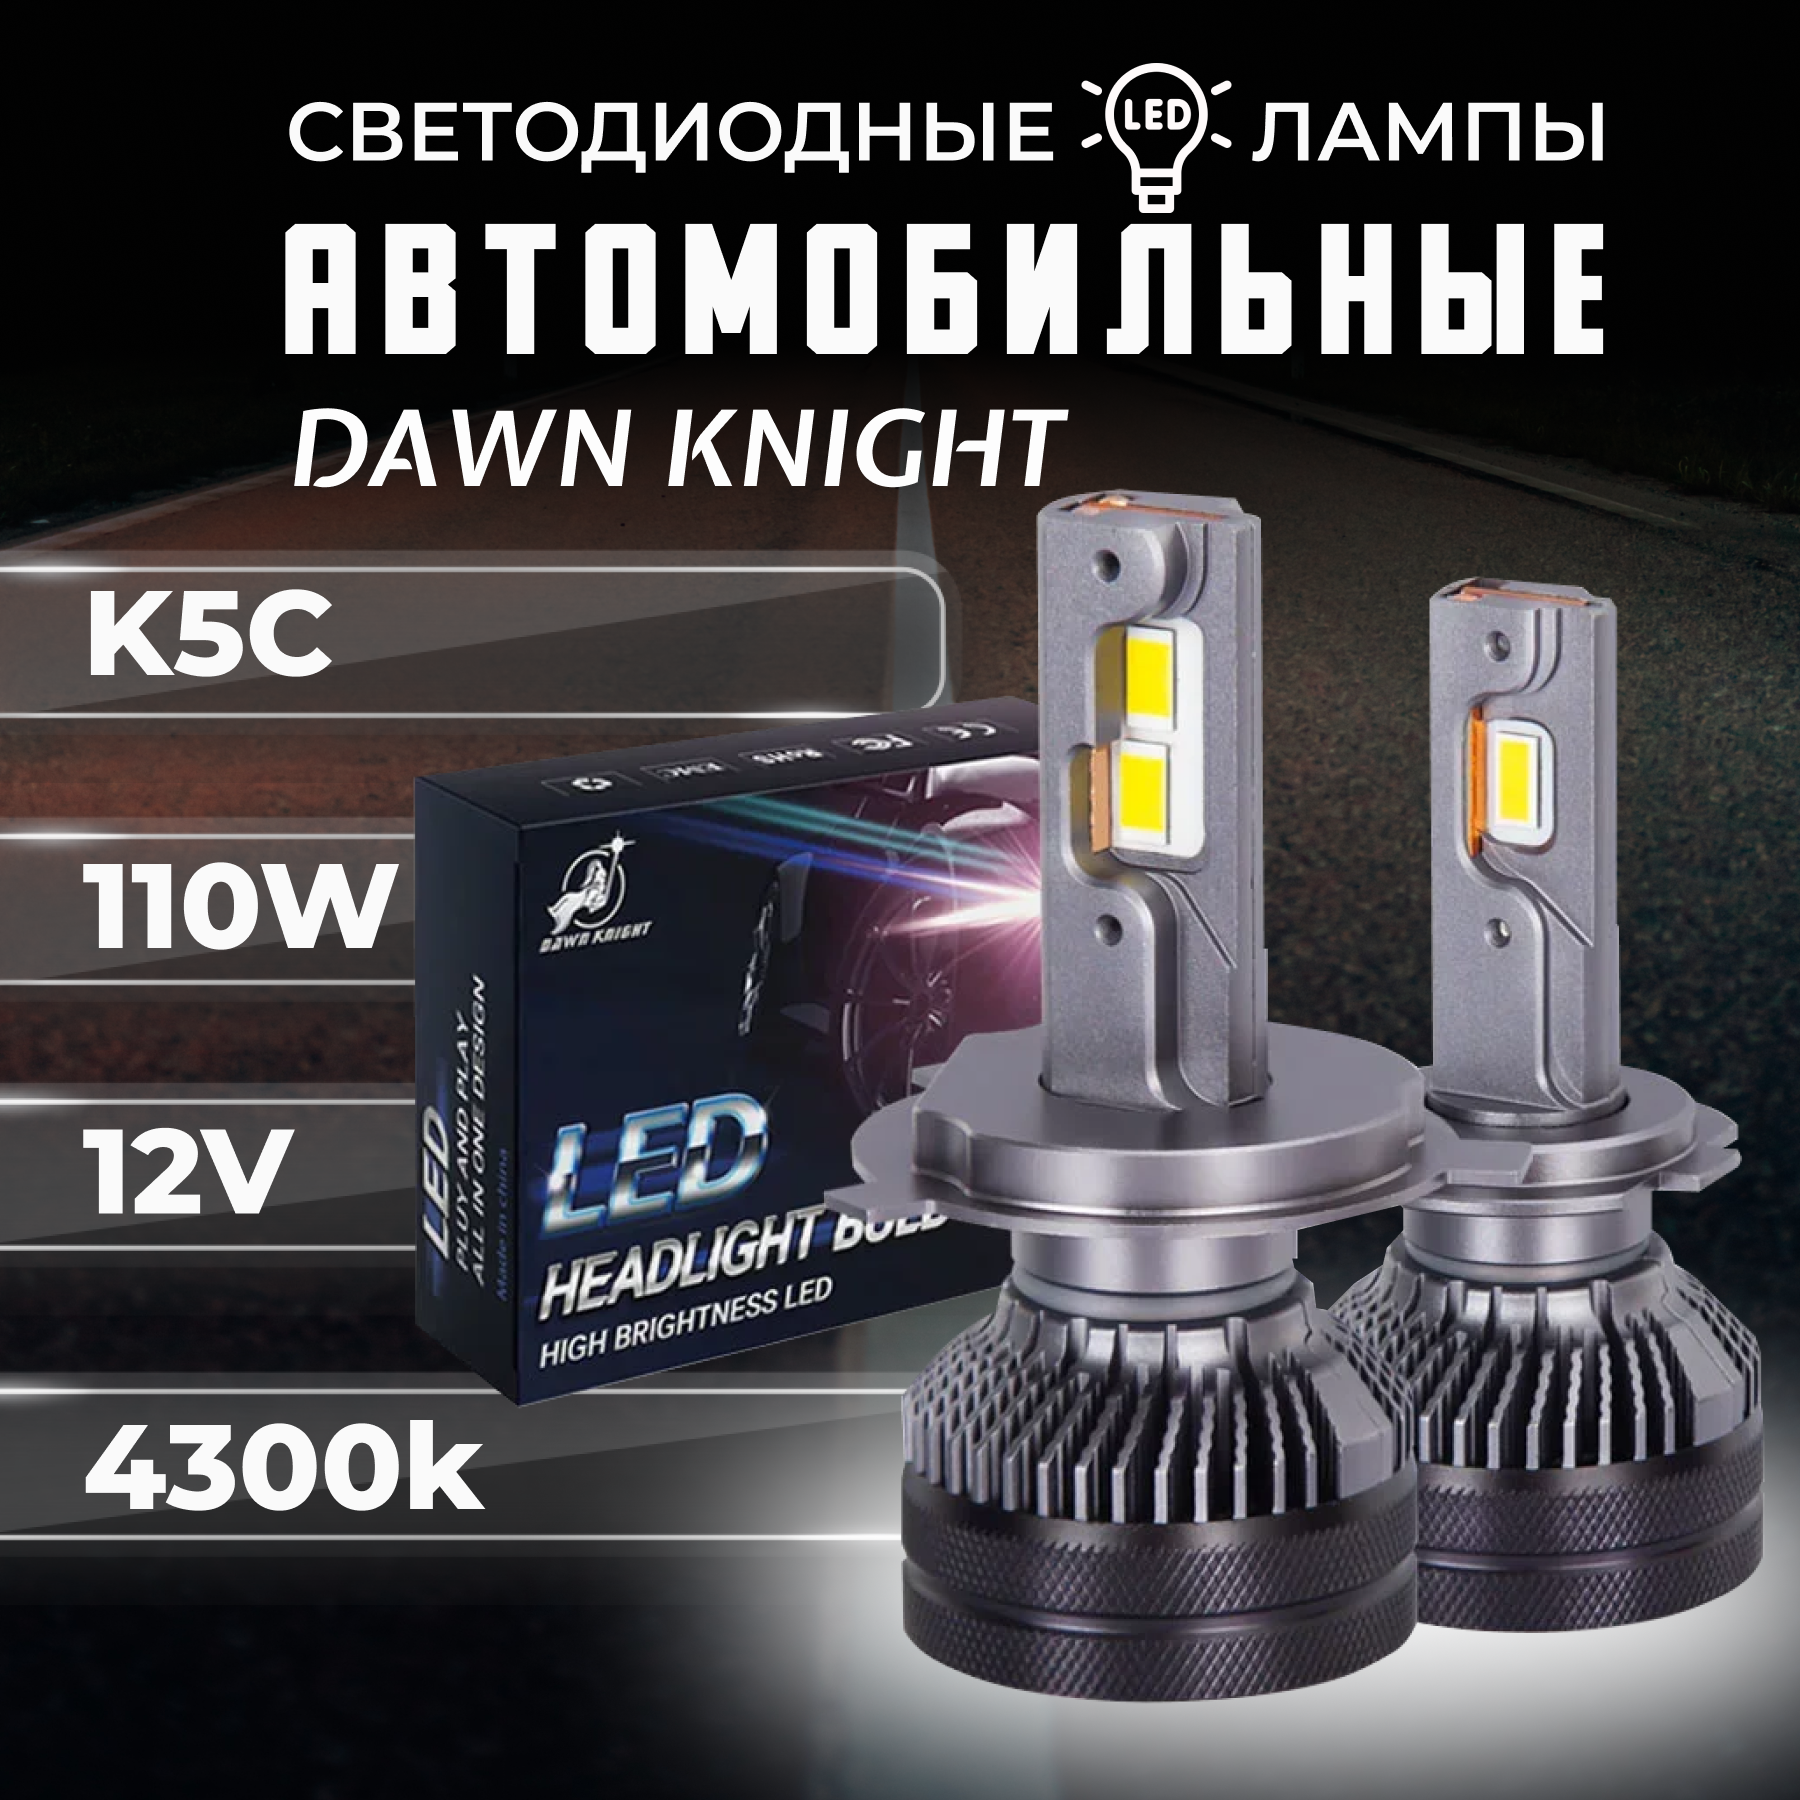 K5C H1 светодиодные авто лампы 4300K DAWNKNIGHT 110W/ 12v 2шт в компл. / Длительный срок службы